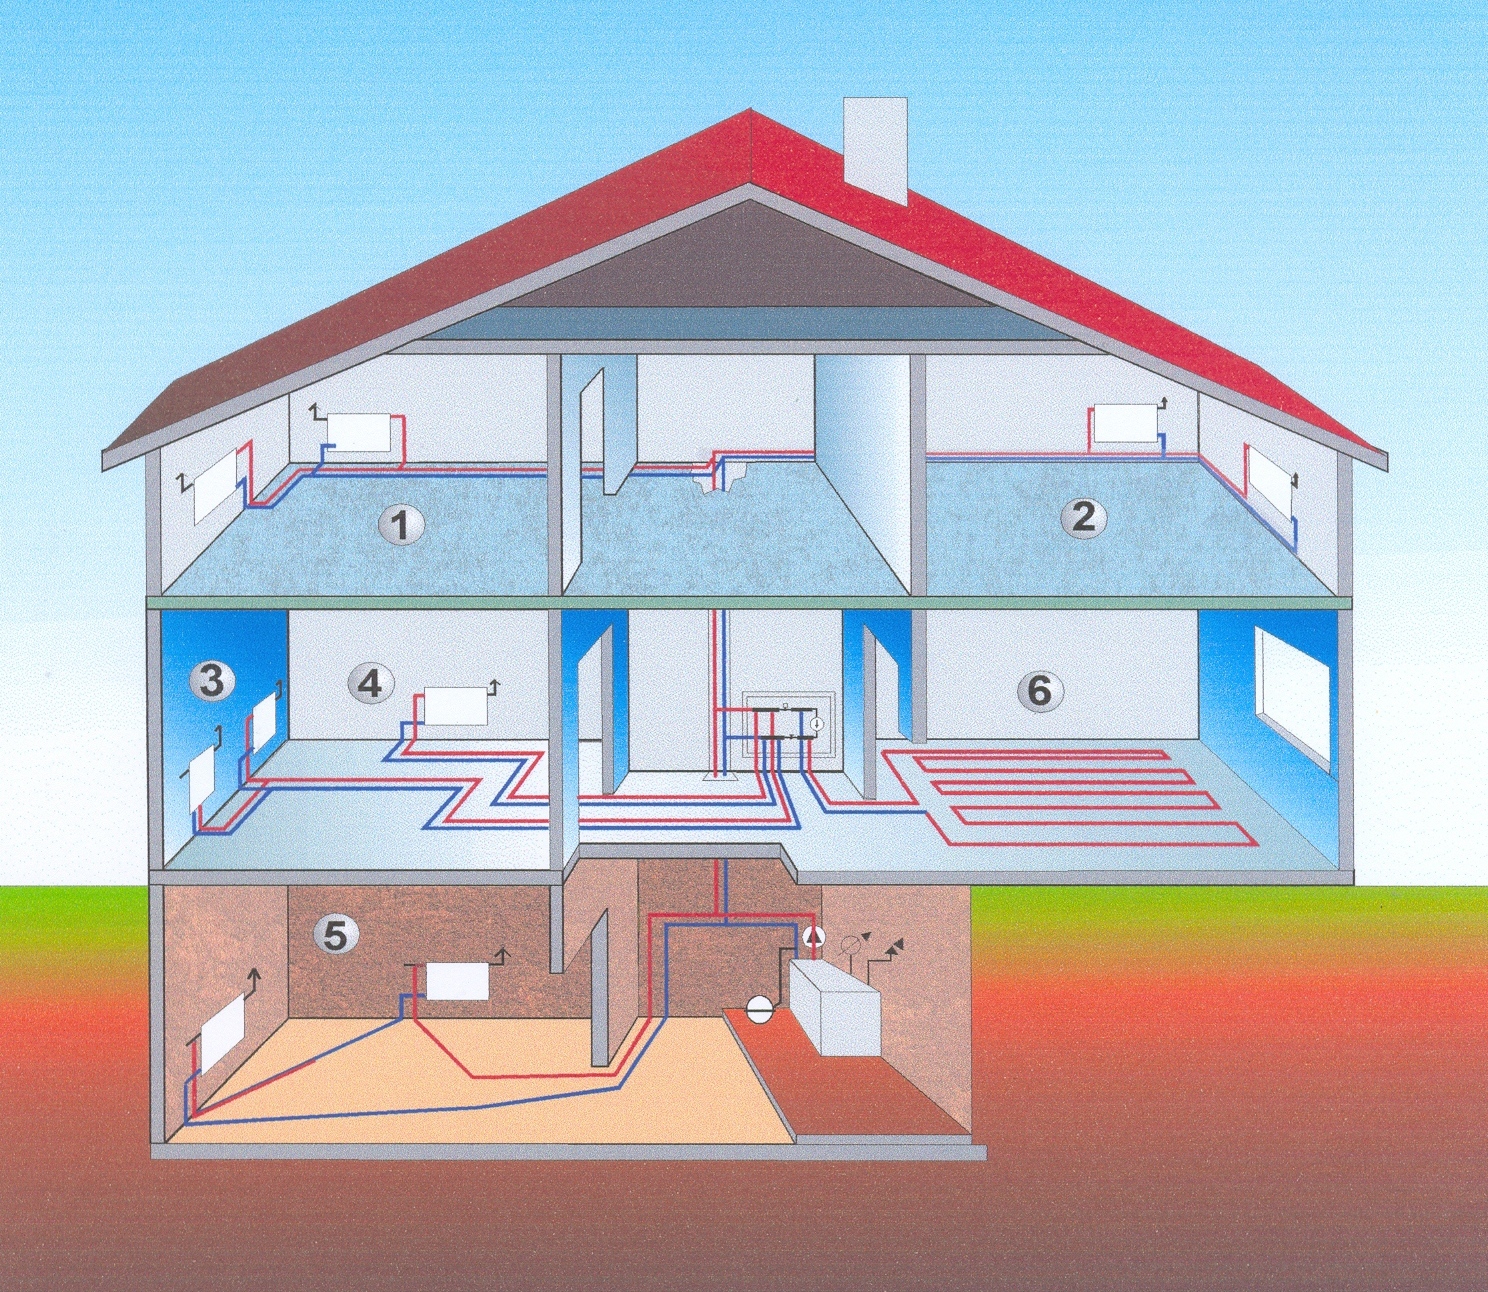 Какое отопление для многоквартирного дома лучше: центральное водяное или газовое